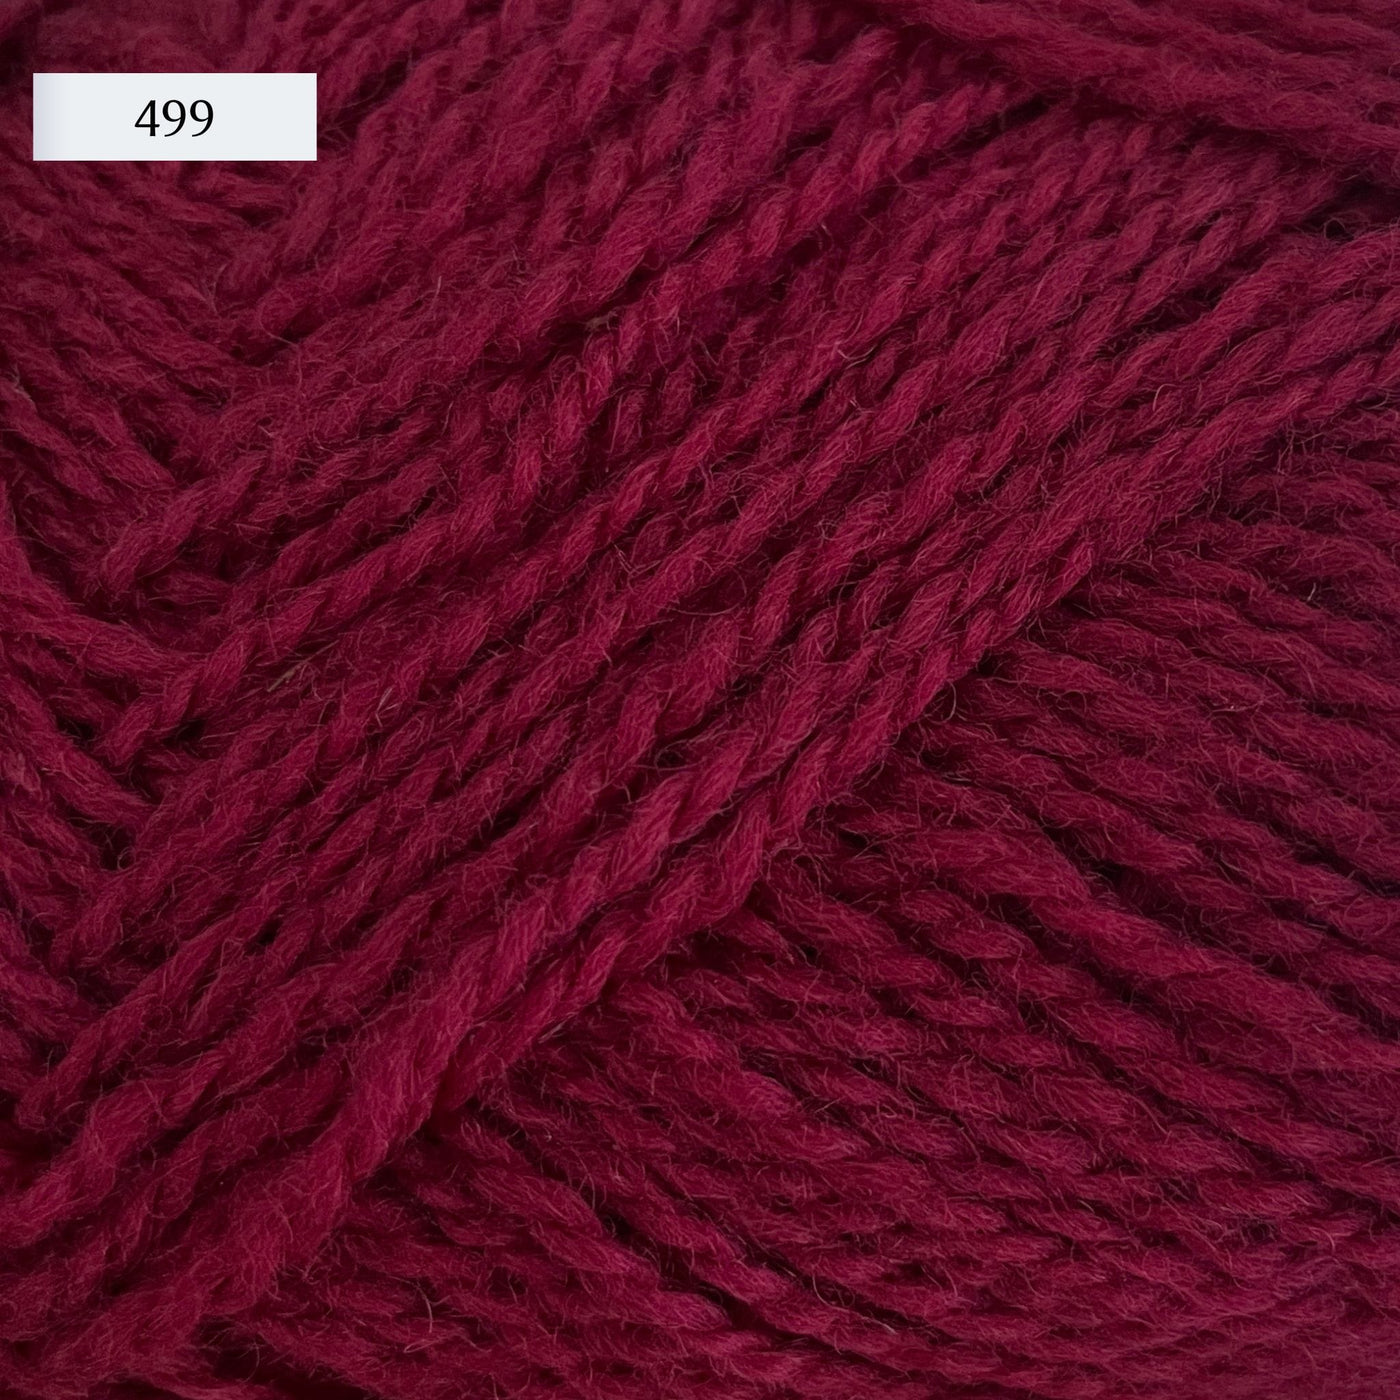 Rauma Finullgarn, a fingering/sport weight yarn, in color 499, a red-burgundy